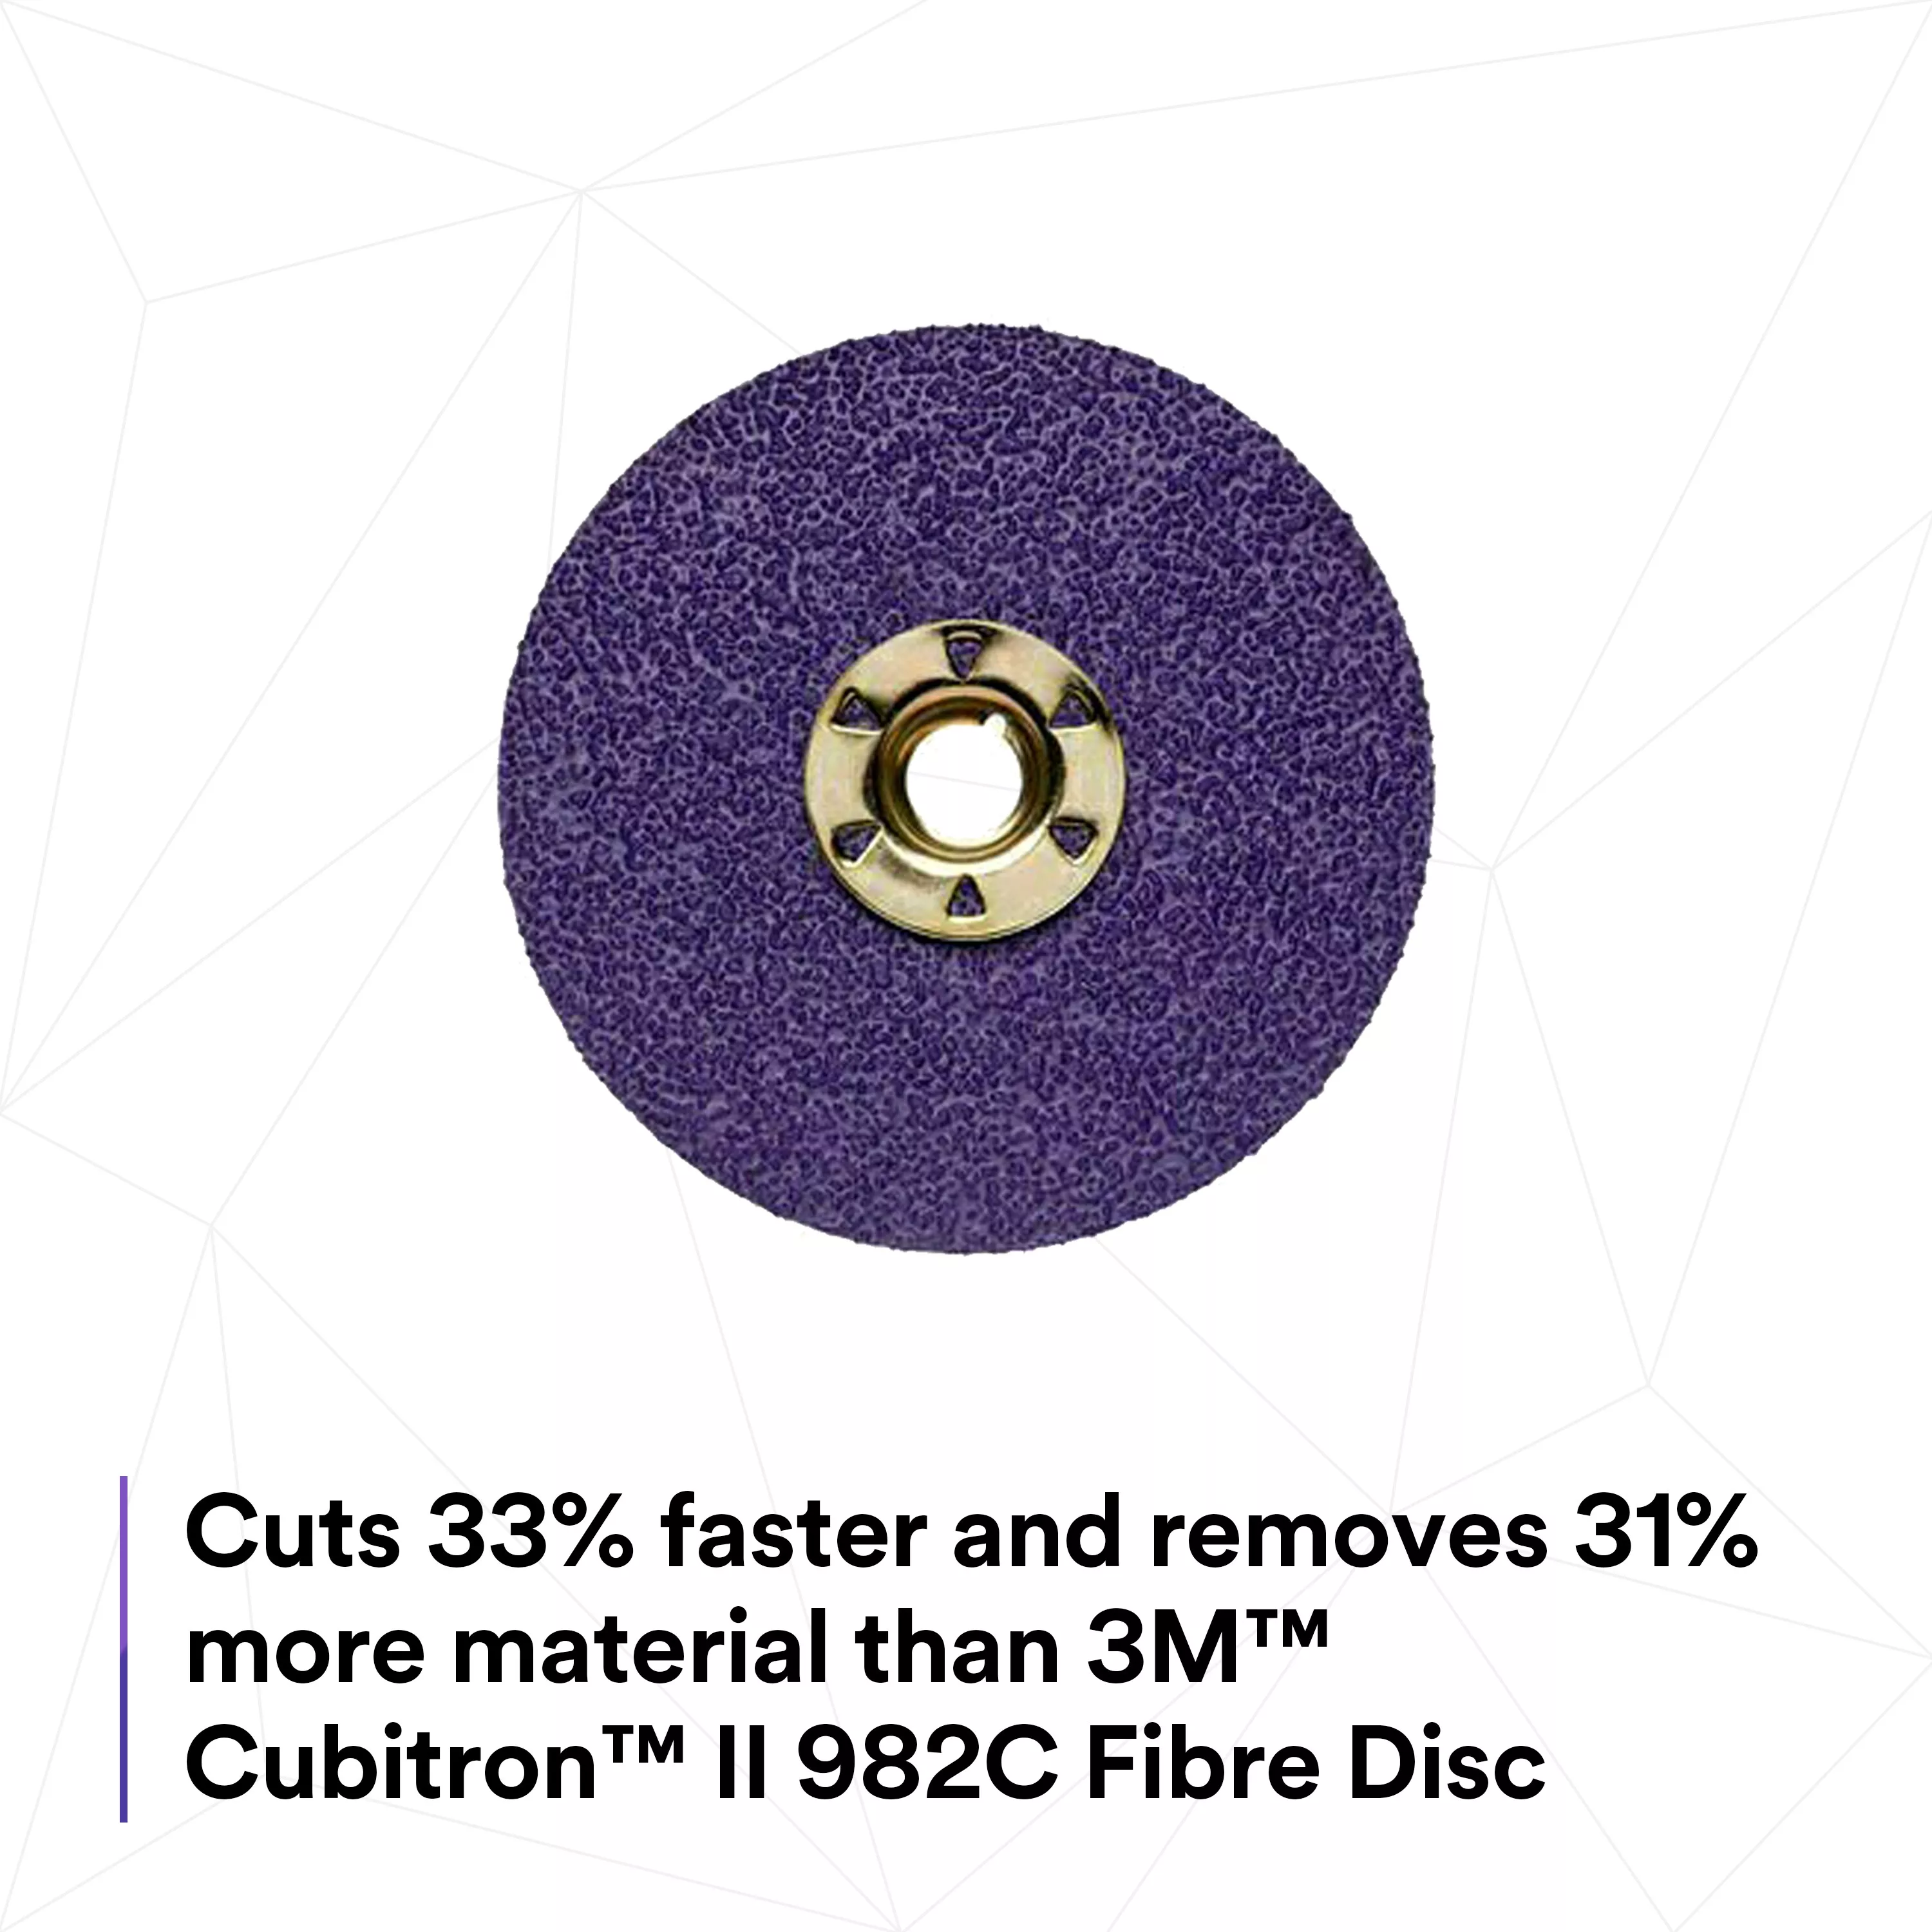 Product Number 982CX | 3M™ Cubitron™ II Fibre Disc 982CX Pro